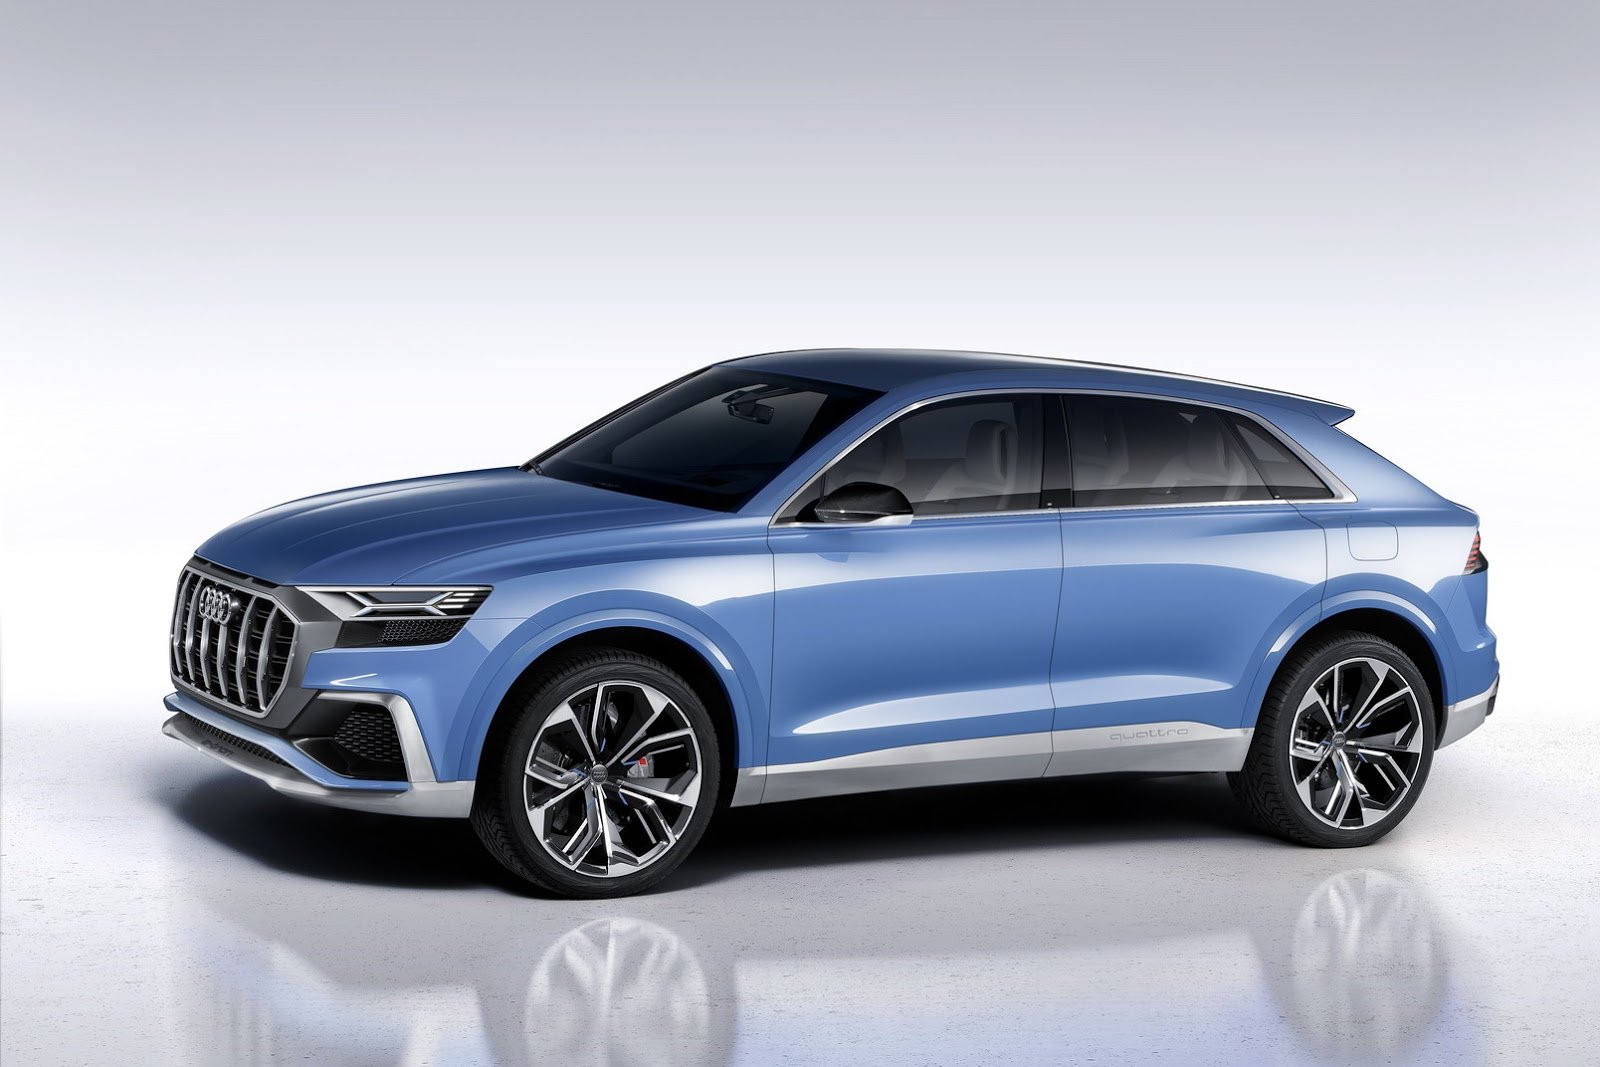 Audi Q8 se představuje nejprve jako koncept, realitou se ale stane již brzy.